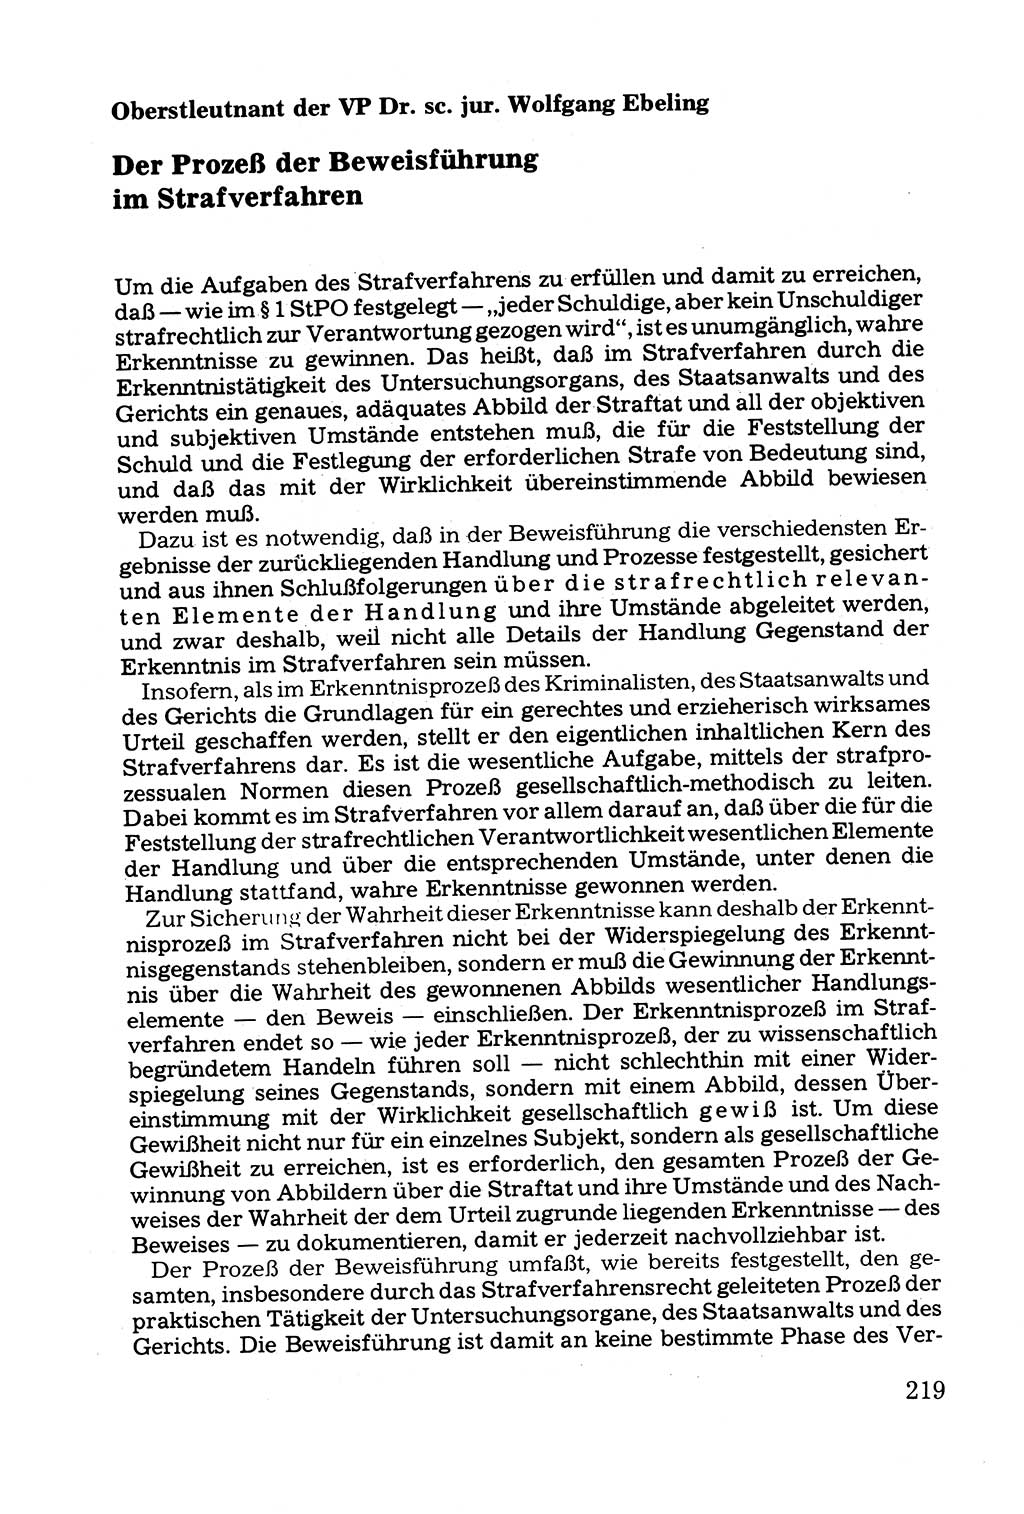 Grundfragen der Beweisführung im Ermittlungsverfahren [Deutsche Demokratische Republik (DDR)] 1980, Seite 219 (Bws.-Fhrg. EV DDR 1980, S. 219)